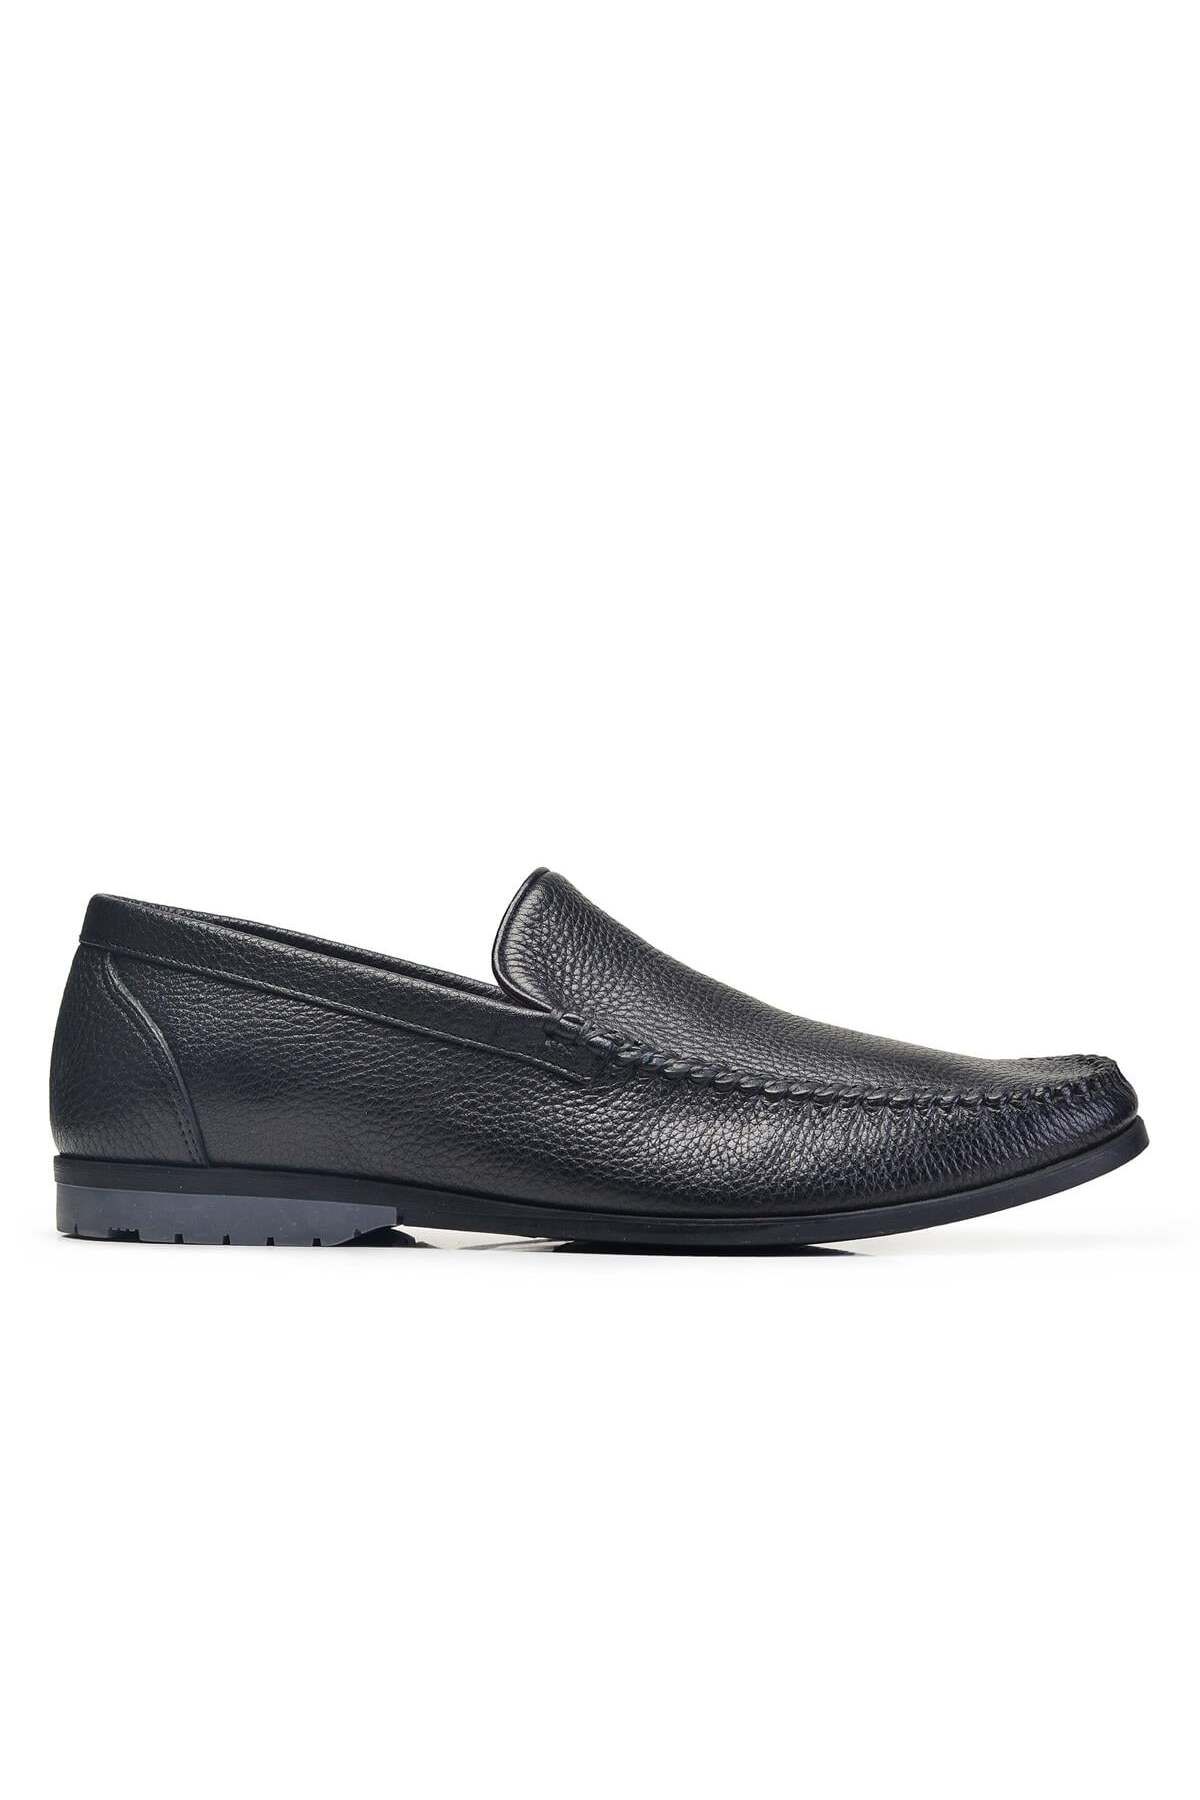 Nevzat Onay Siyah Günlük Loafer Erkek Ayakkabı -73291-